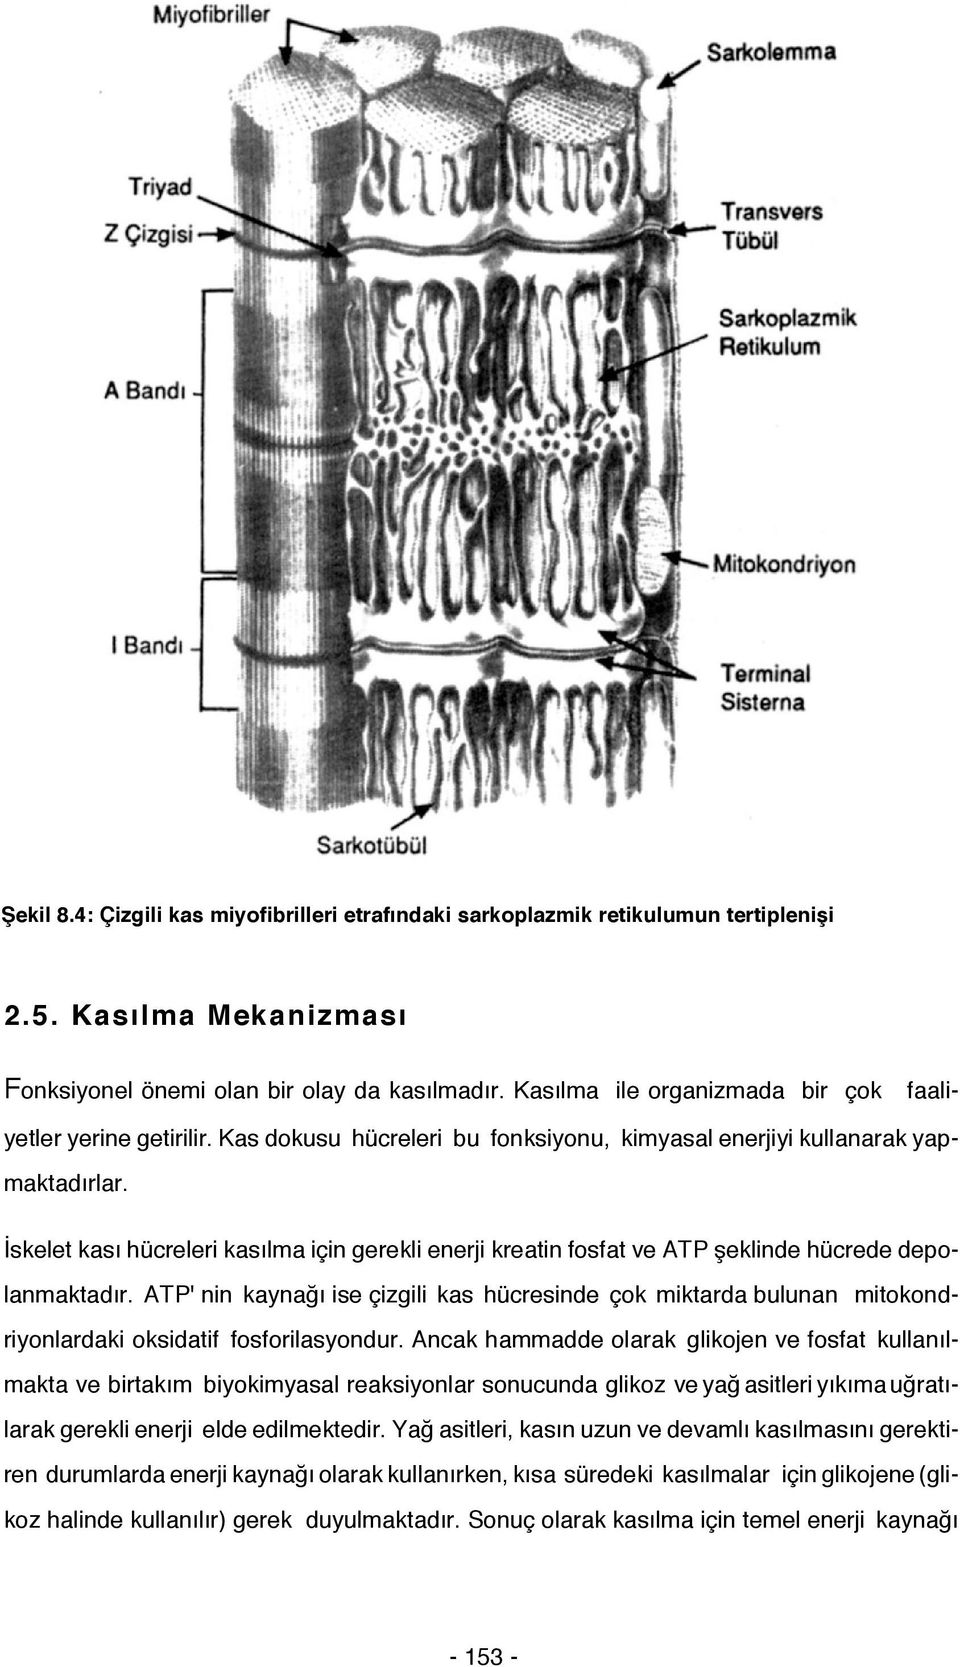 İskelet kası hücreleri kasılma için gerekli enerji kreatin fosfat ve ATP şeklinde hücrede depolanmaktadır.